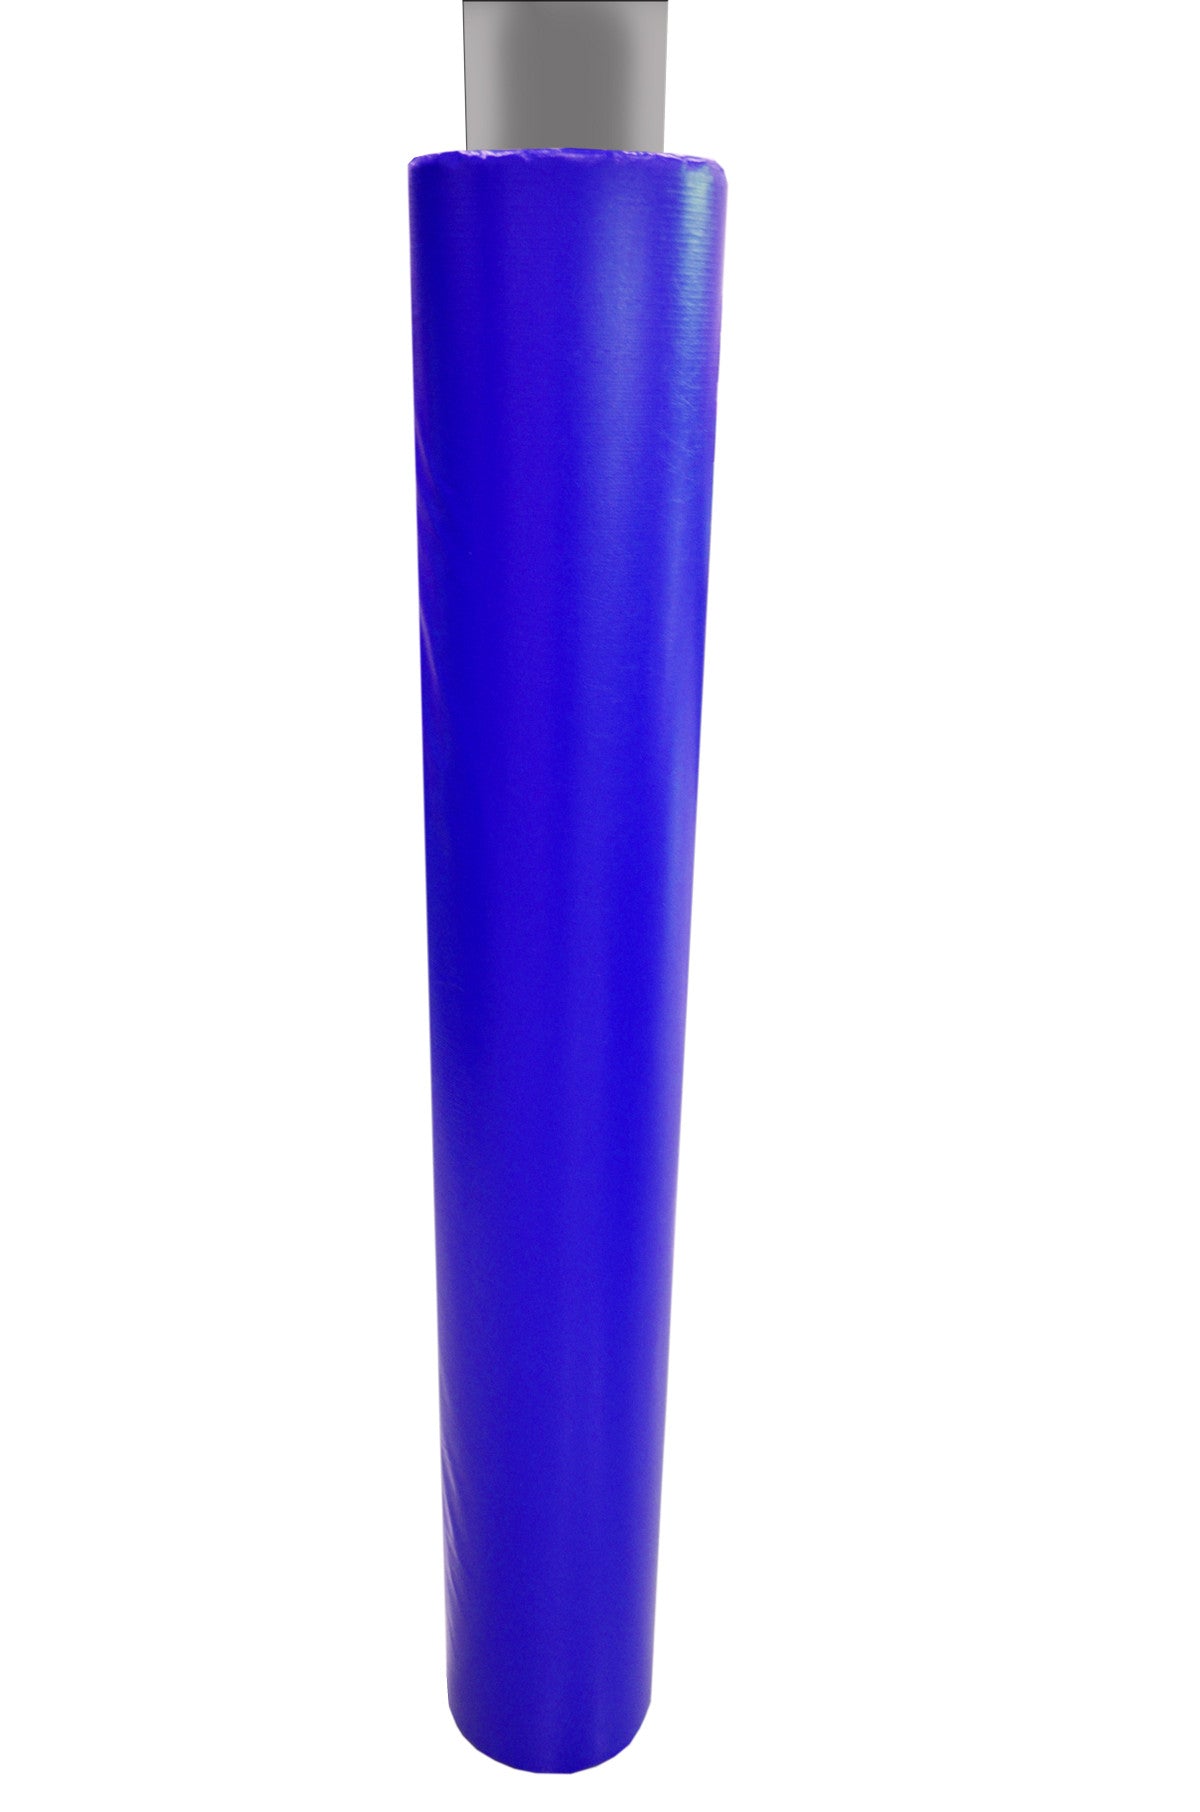 6' Tall Pole Pad, 7" Diameter